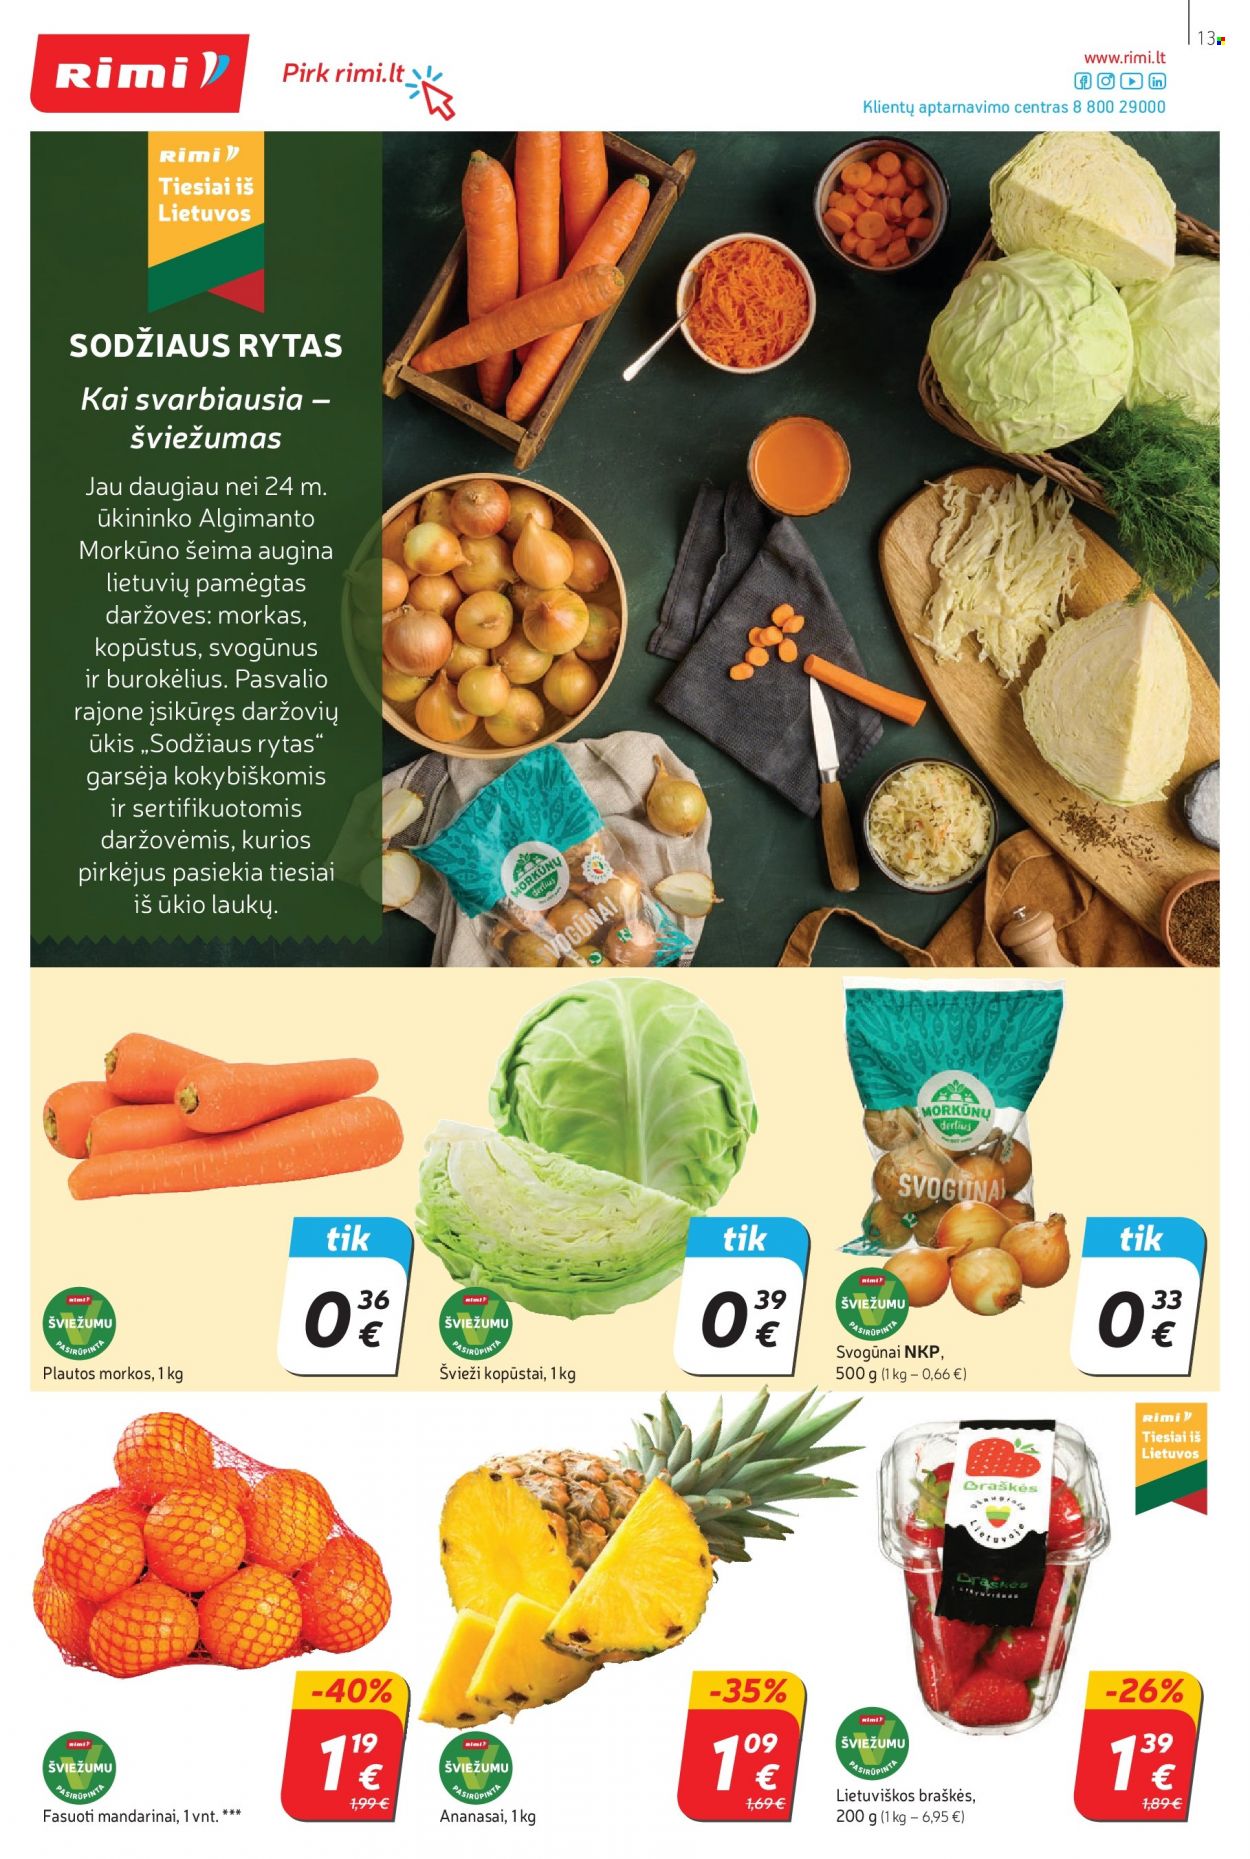 thumbnail - „Rimi“ leidinys - 2021 10 05 - 2021 10 11 - Išpardavimų produktai - kopūstai, morkos, svogūnai, ananasai, braškės, mandarinai. 13 puslapis.